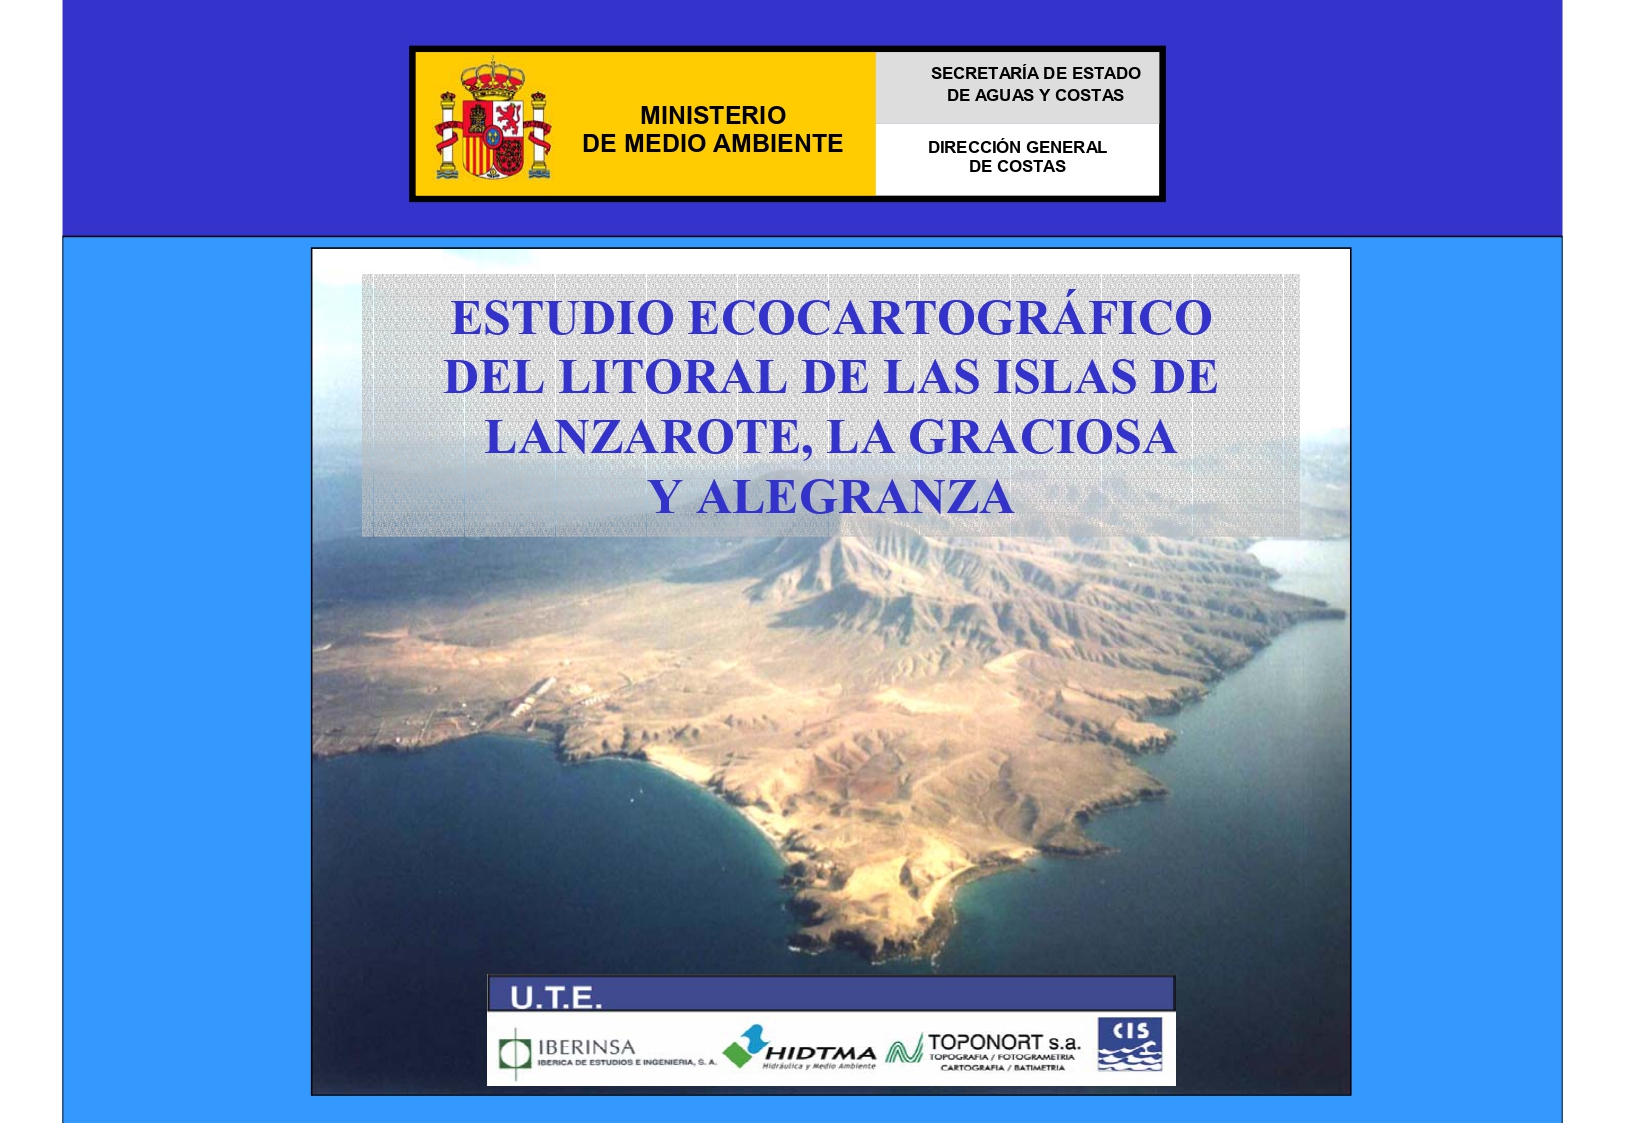 Estudio ecocartográfico del litoral de las islas de Lanzarote, La Graciosa y Alegranza 2